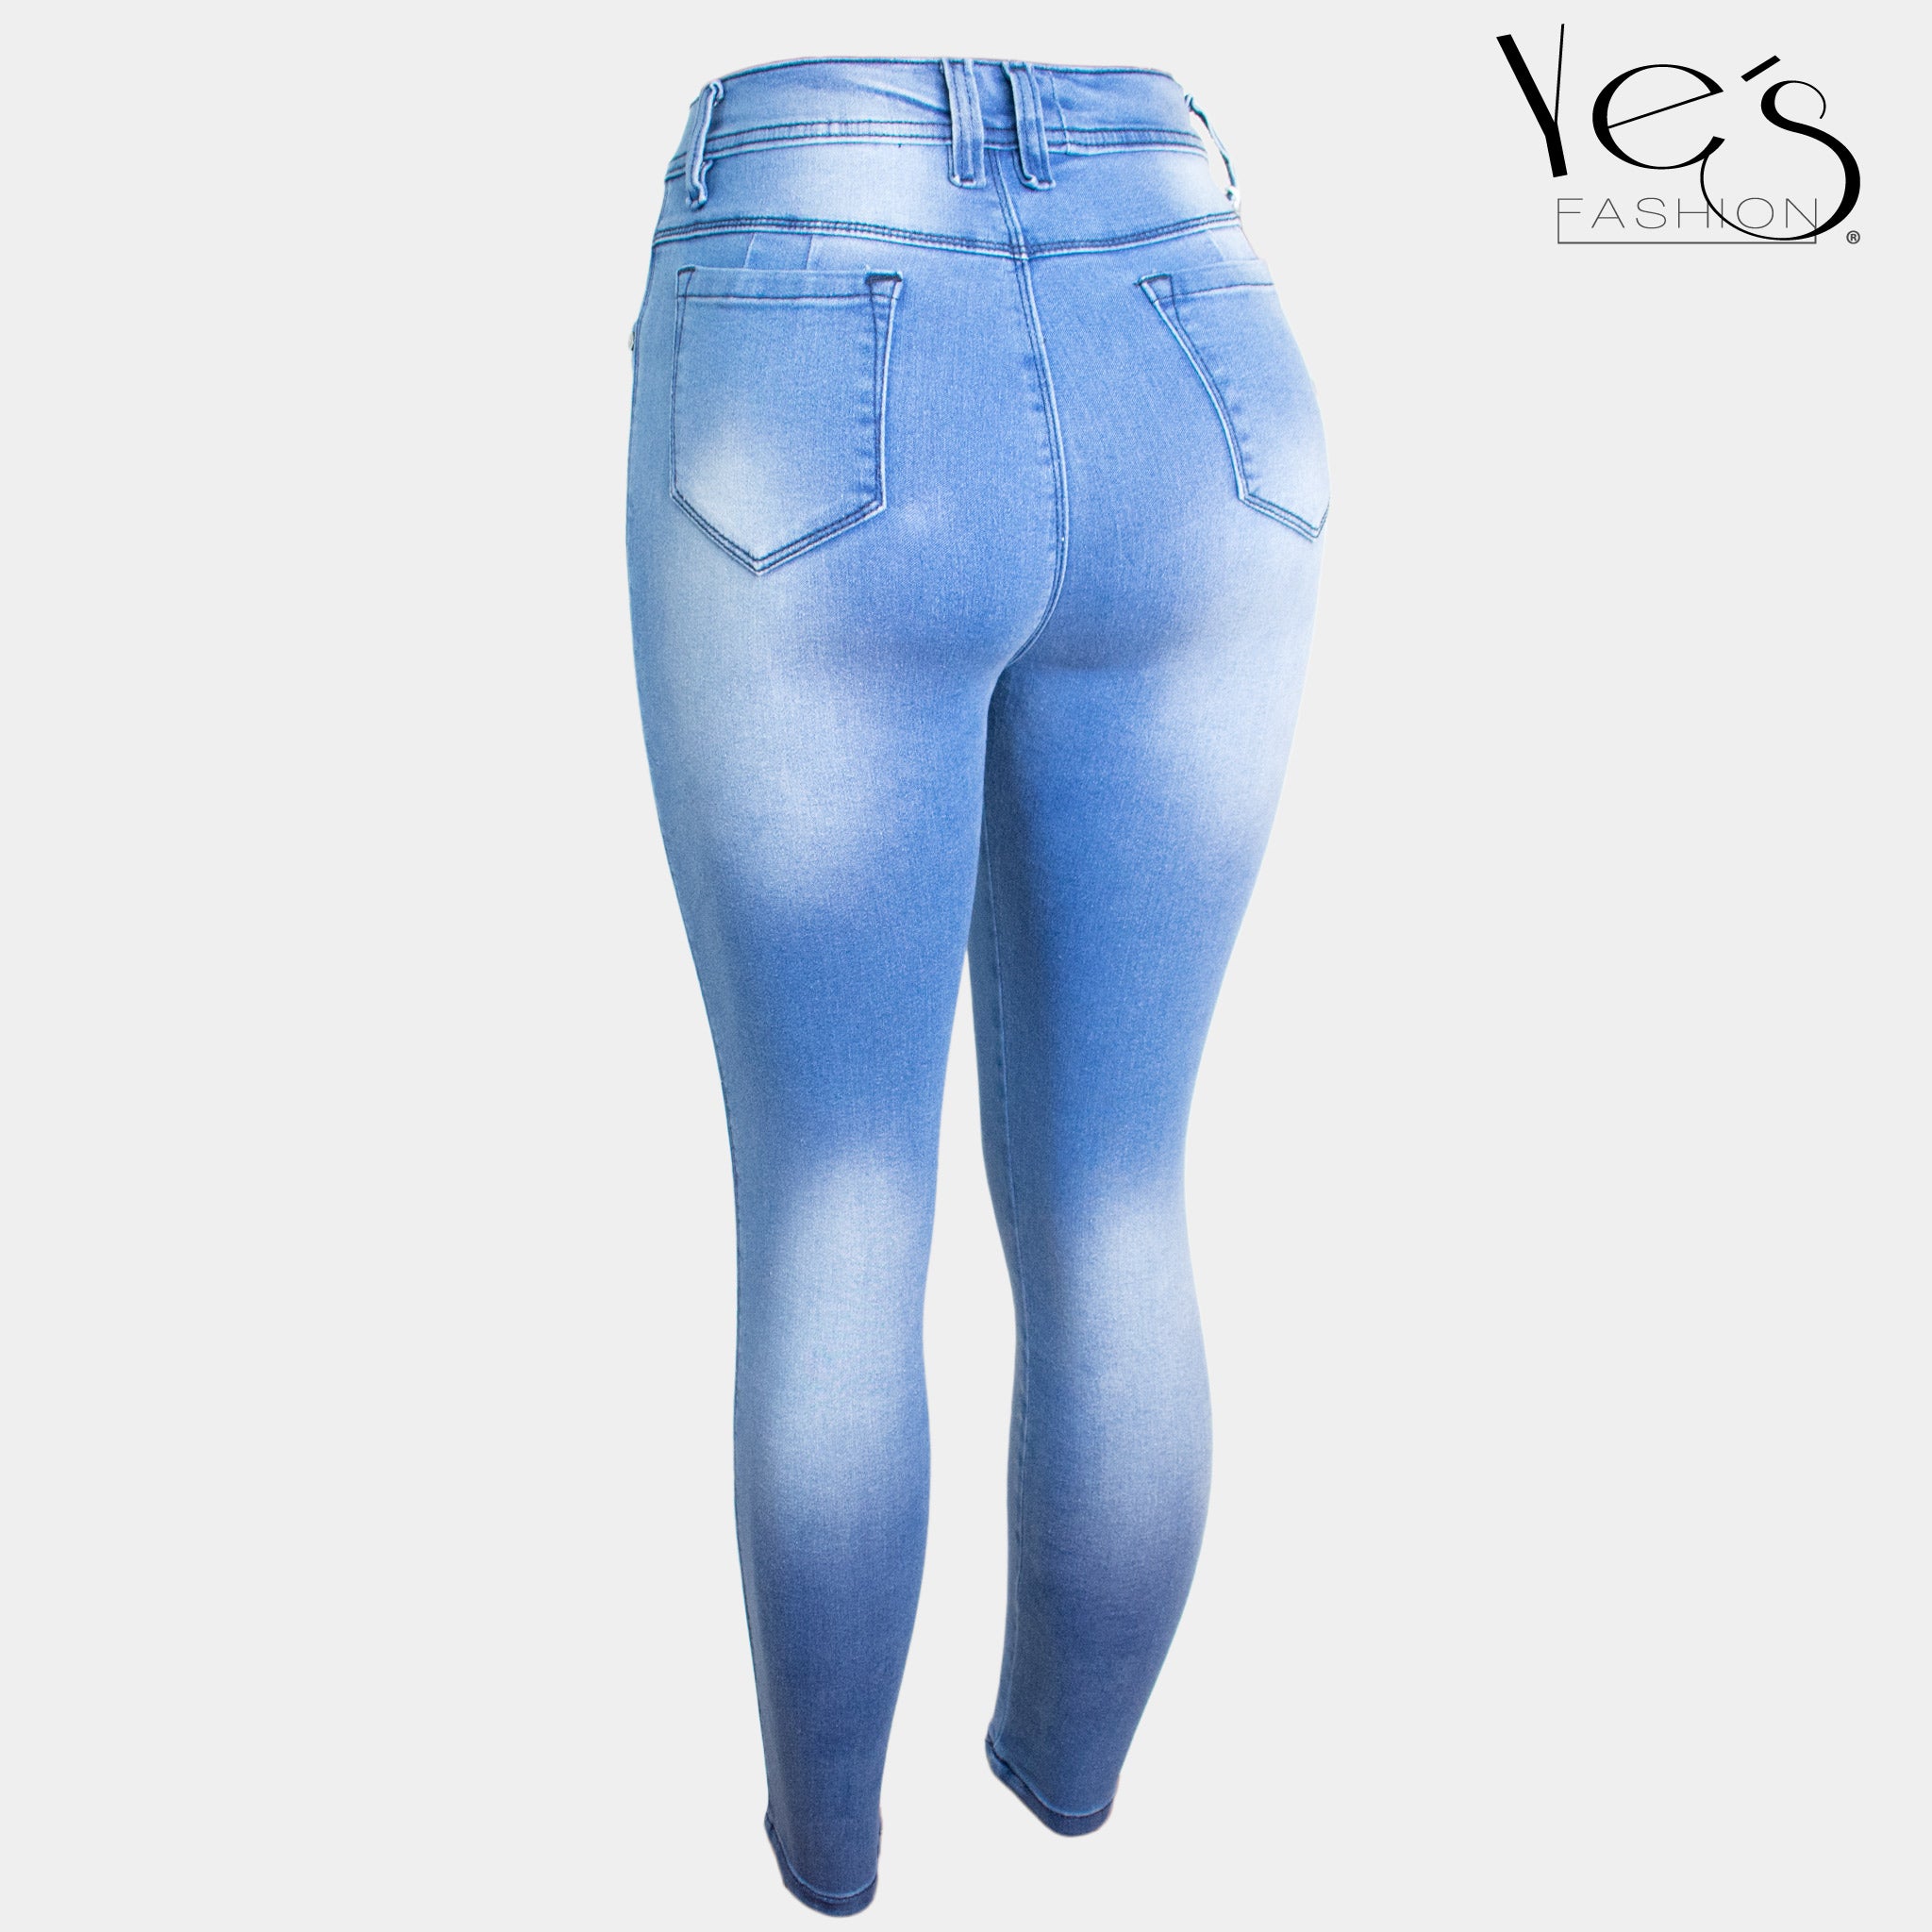 Pantalón Jean para Mujer (Colección Clásica! - Azul Claro)